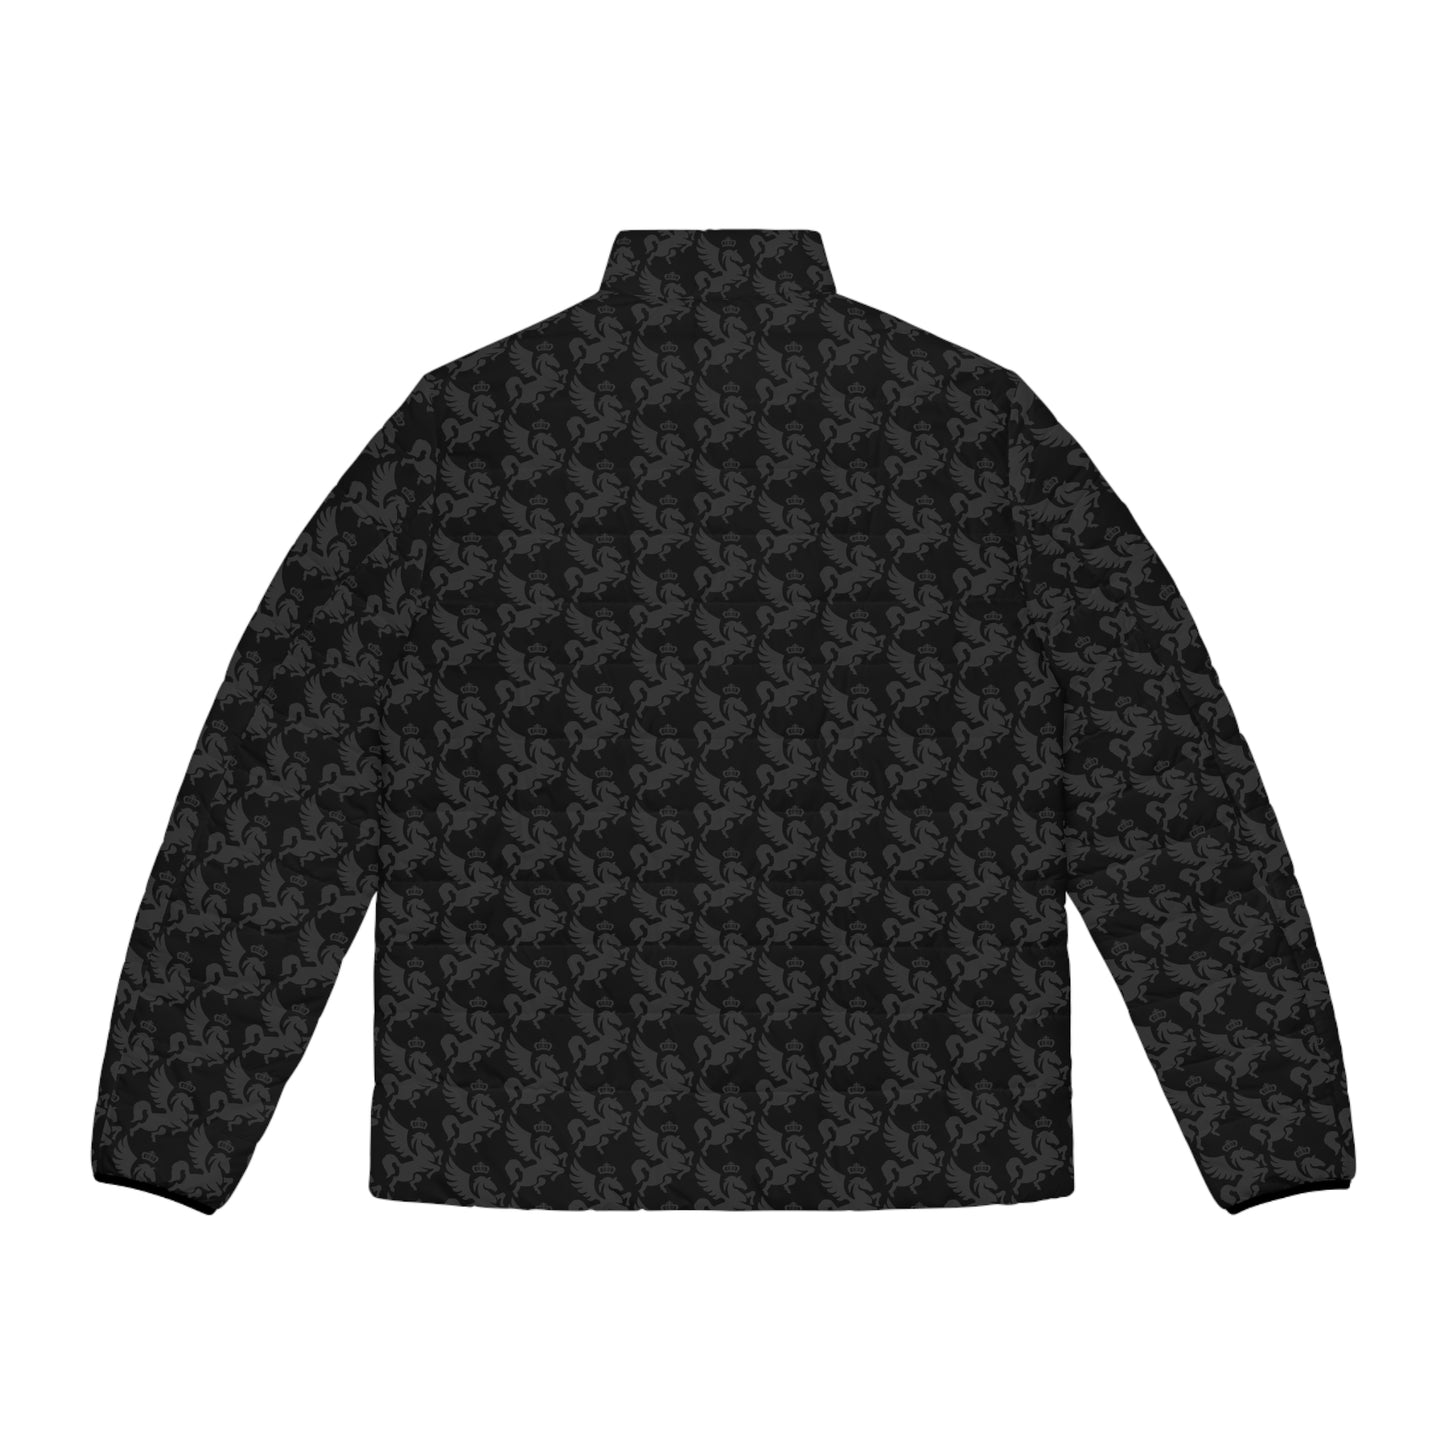 GRANDEUR® Men's Puffer Jacket Black (AOP)